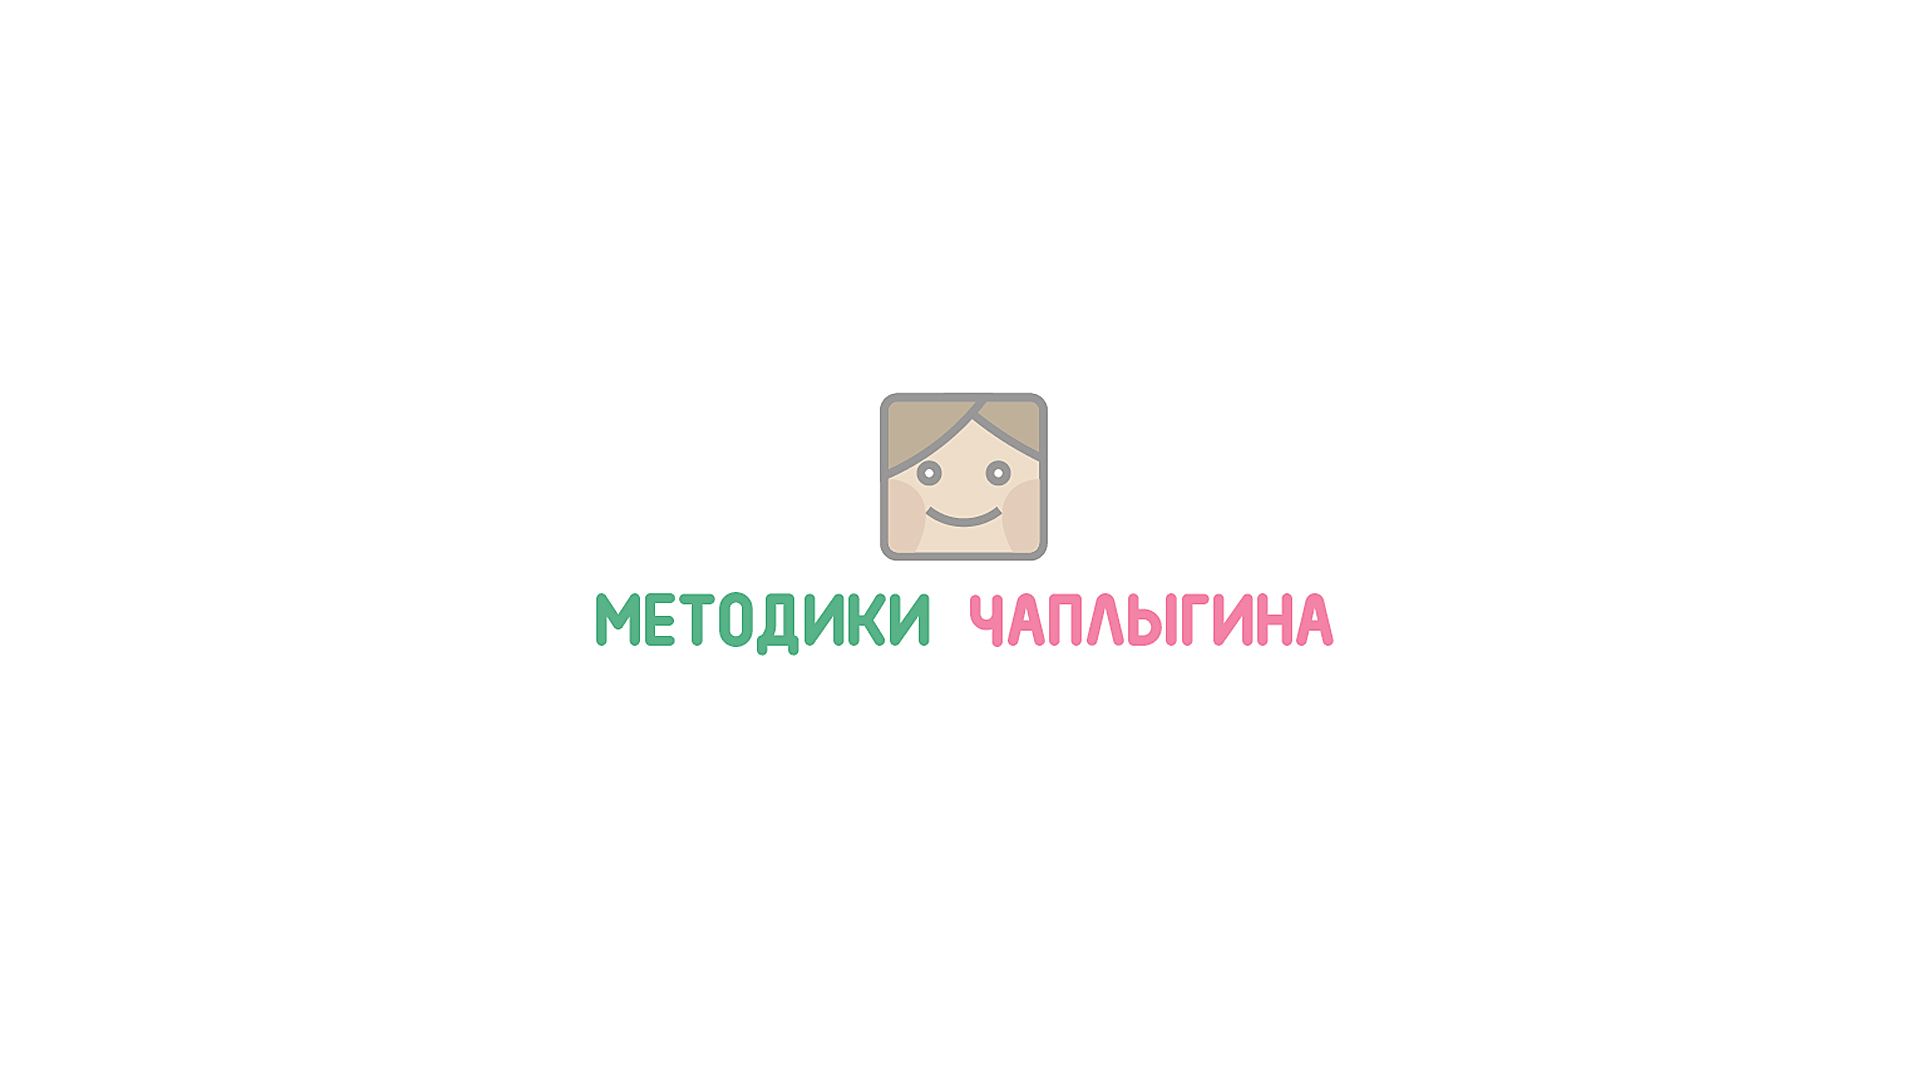 Лого и фирменный стиль для МЕТОДИКИ ЧАПЛЫГИНА - дизайнер DynamicMotion